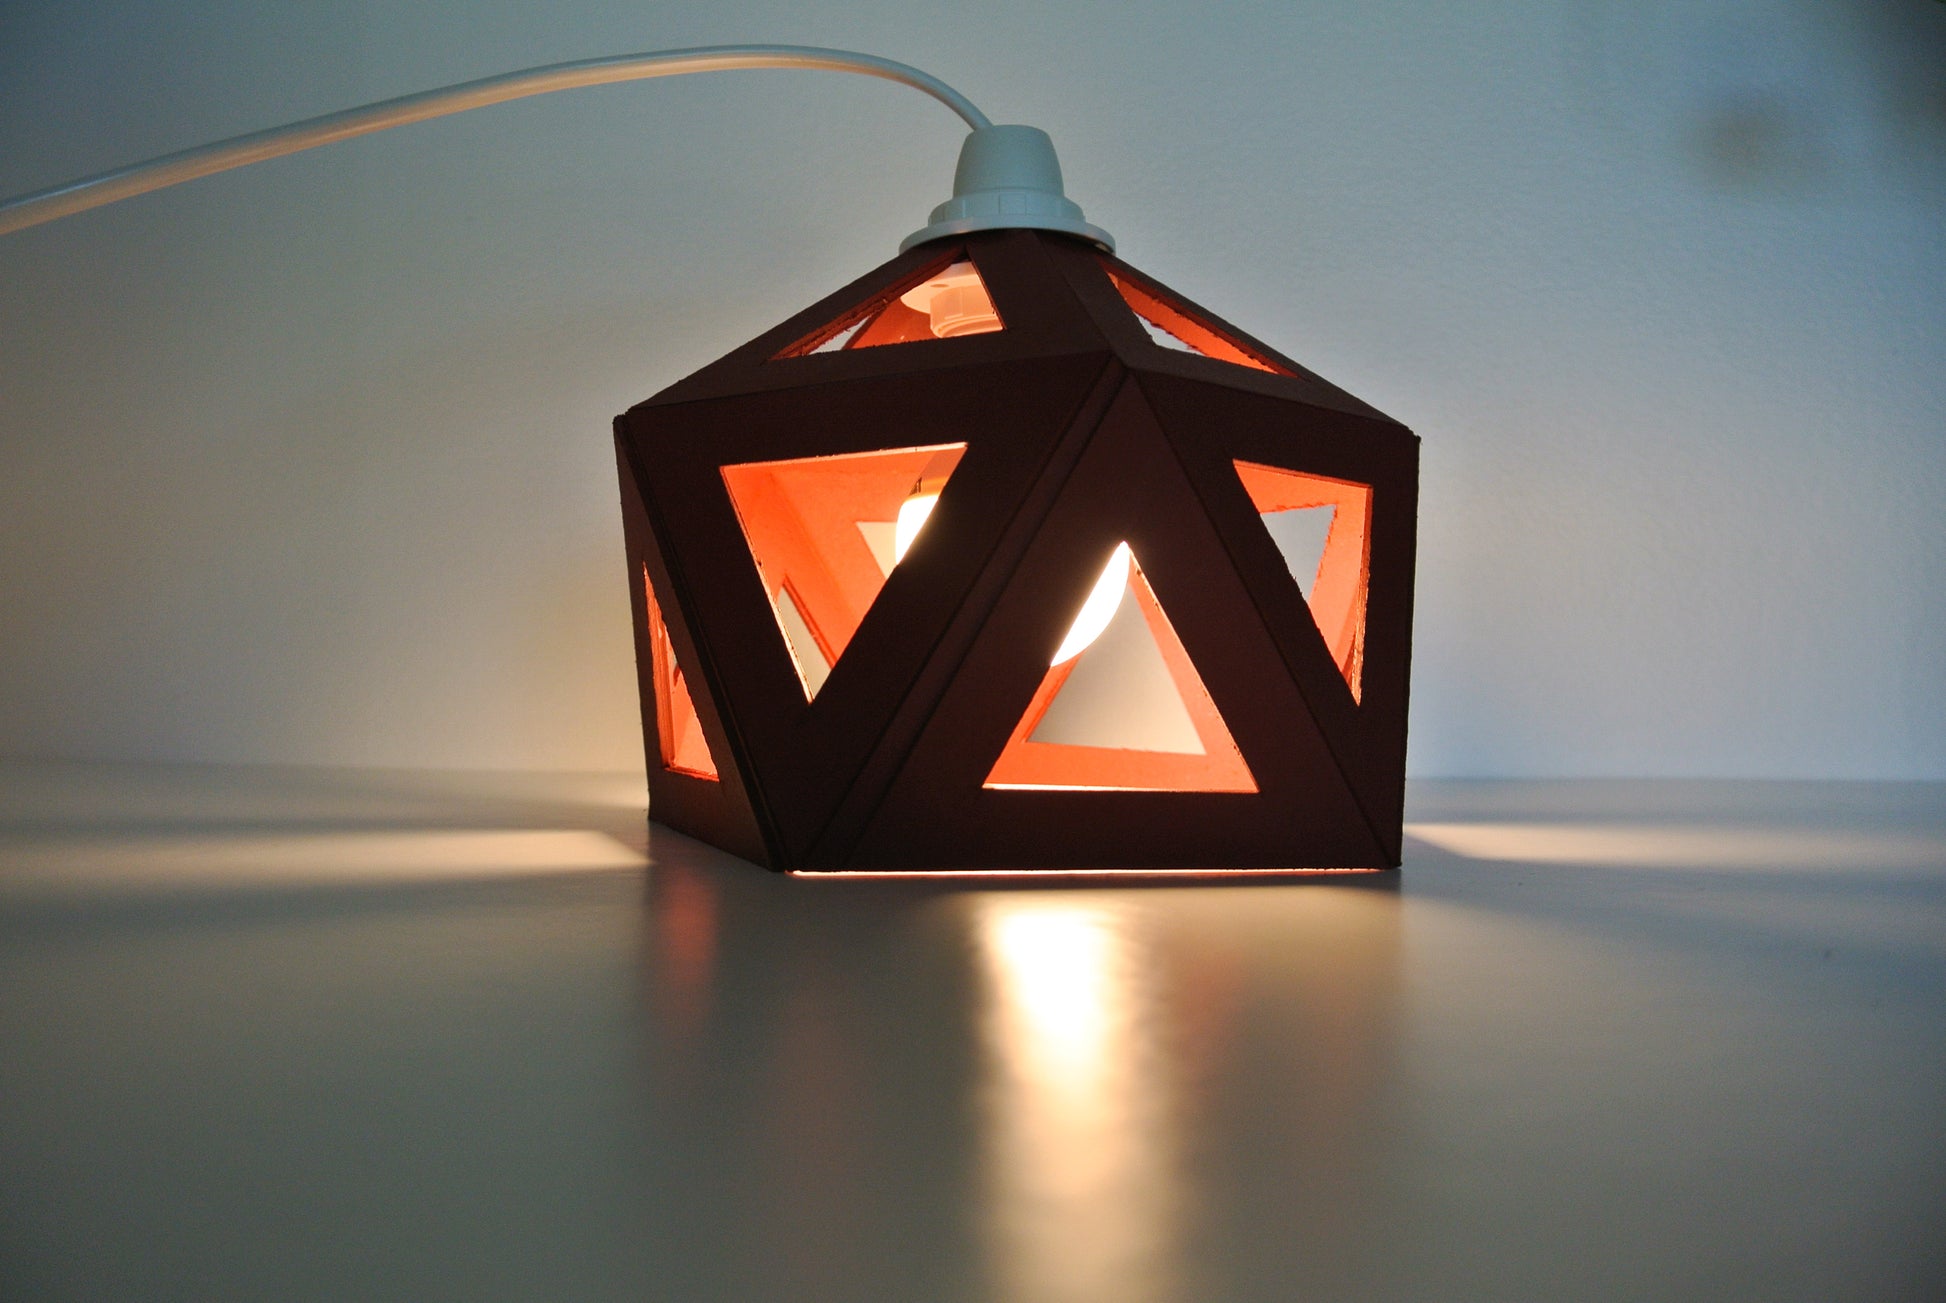 Une Lampe Bordeaux made in France de forme géométrique.